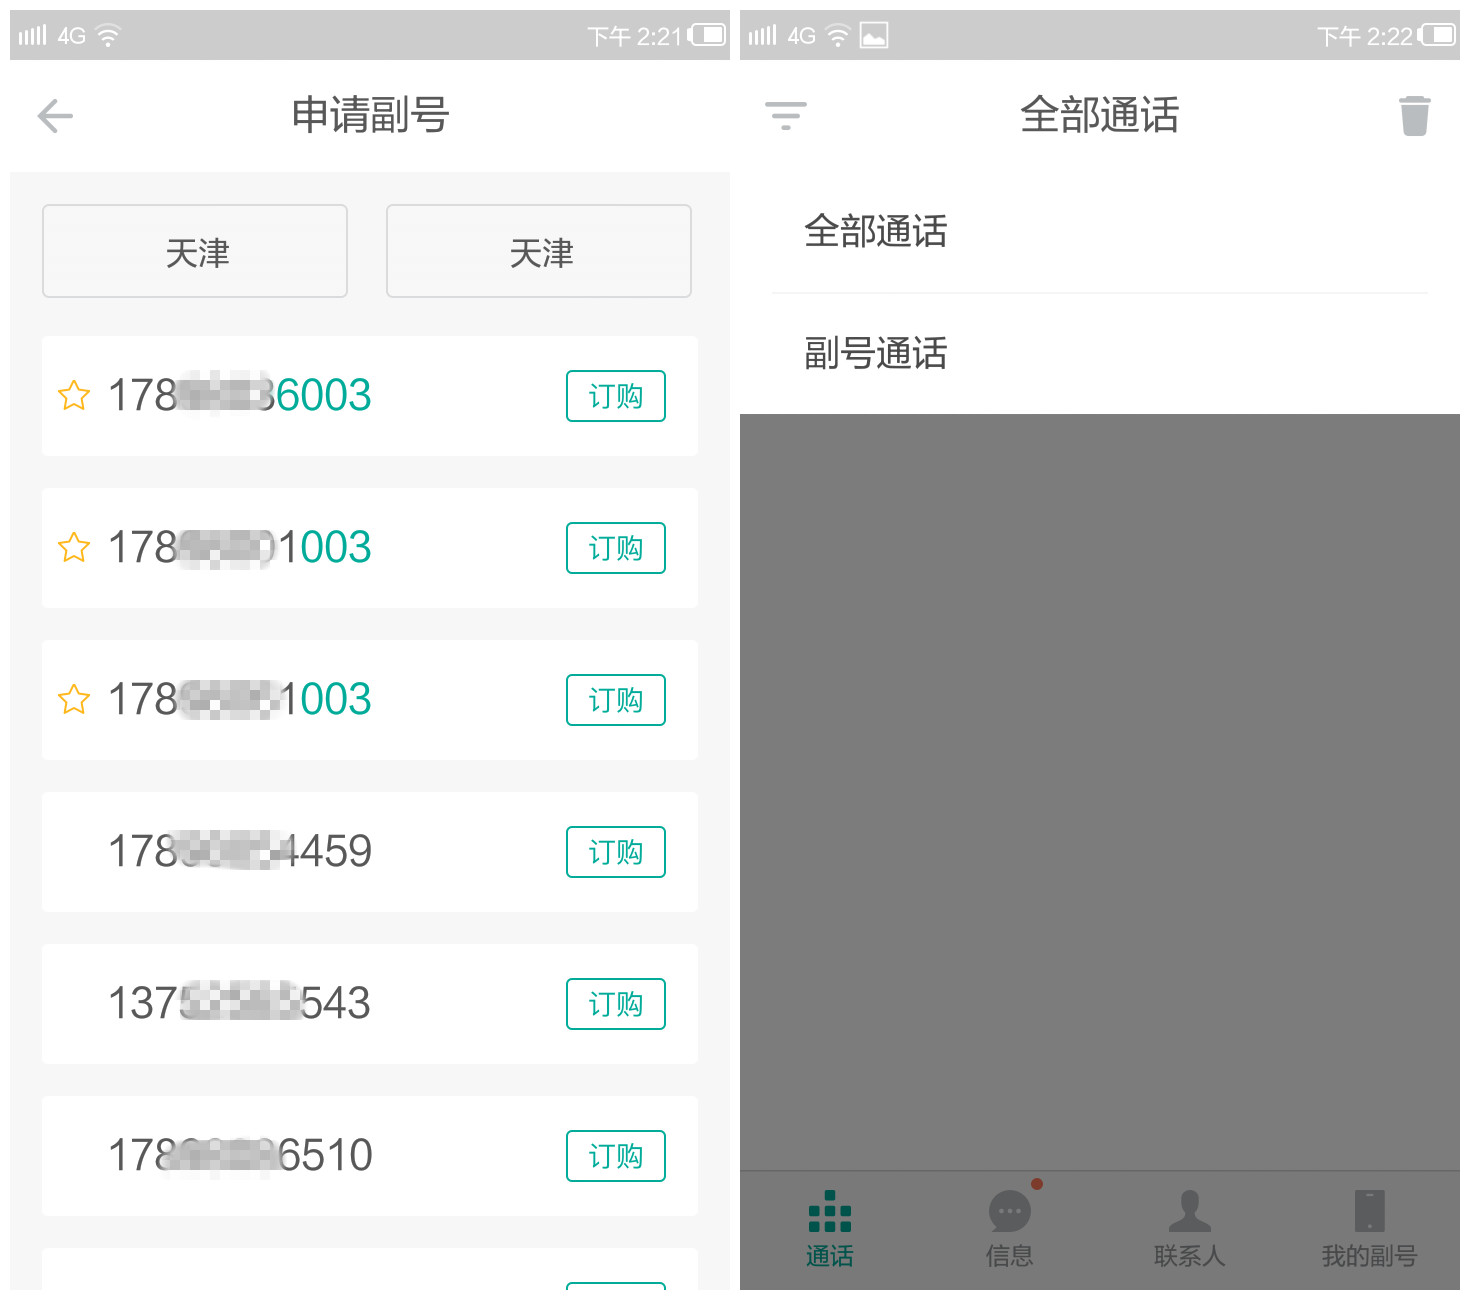 中国移动自有品牌A4手机评测:百元手机也可以